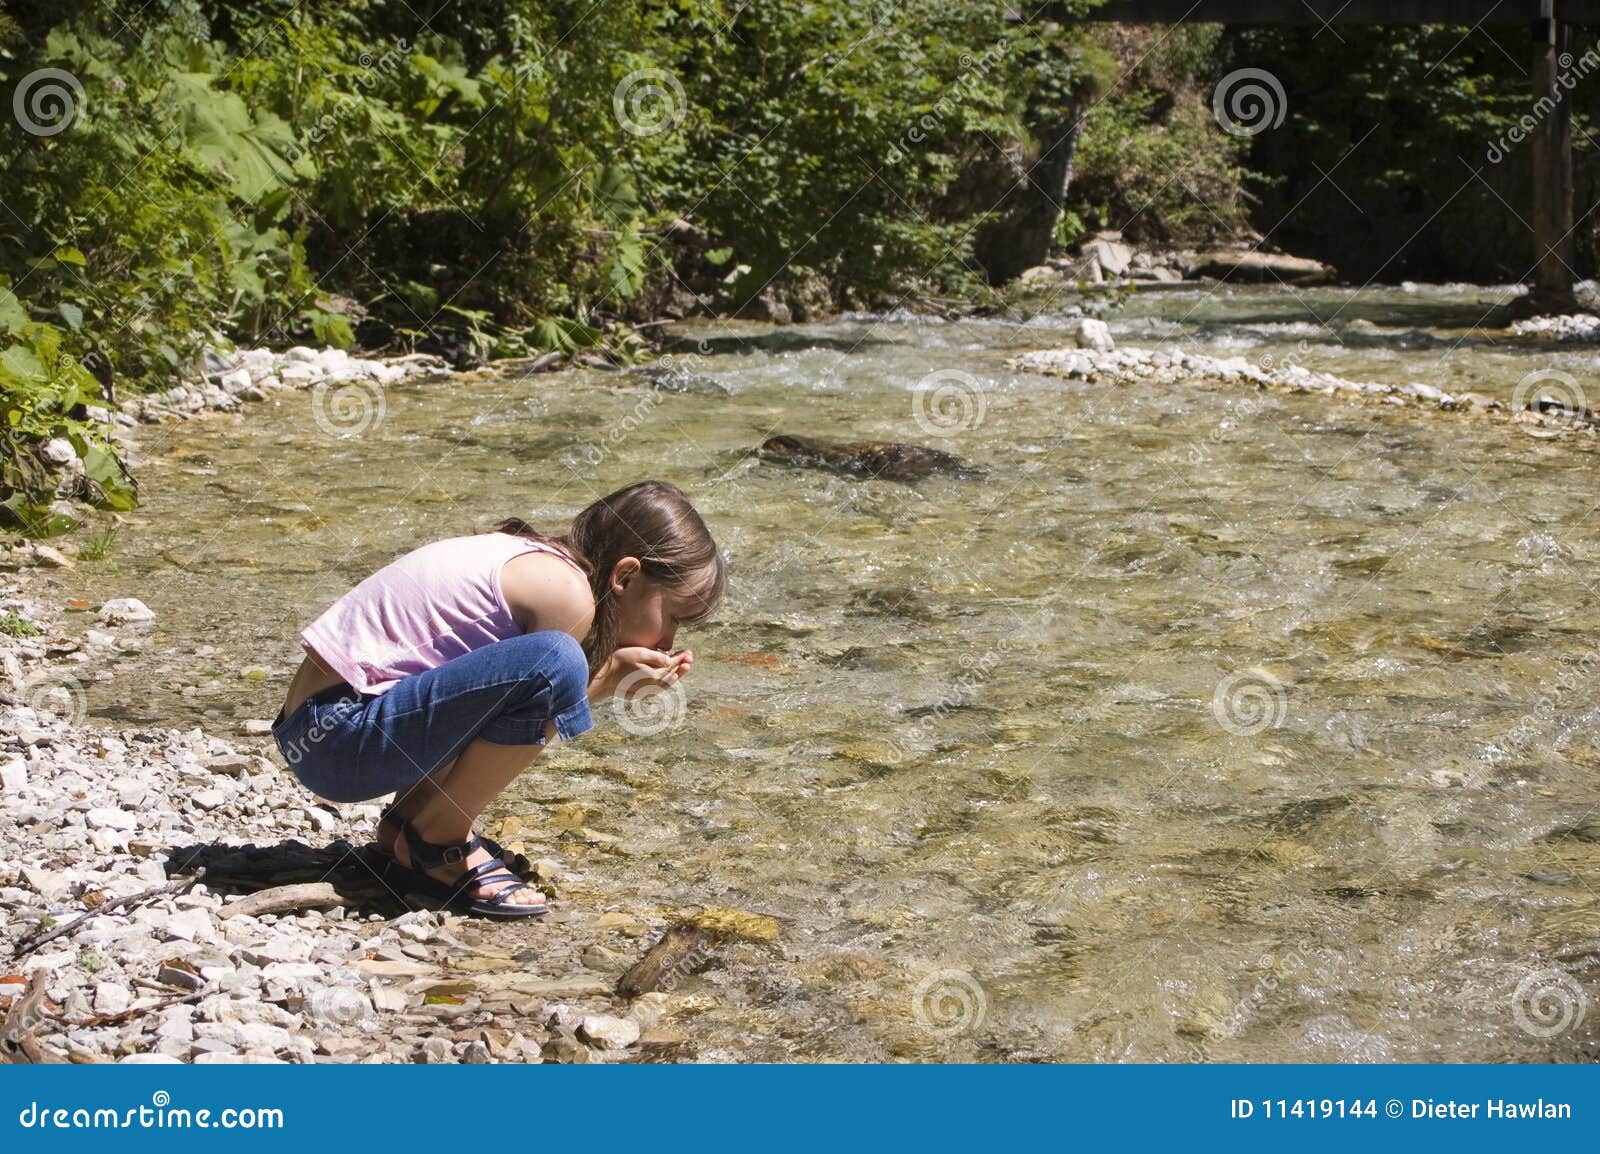 Вода из реки речная вода. Человек пьет воду из ручья. Девушка пьет воду из ручья. Человек пьет воду из реки. Пить из речки.